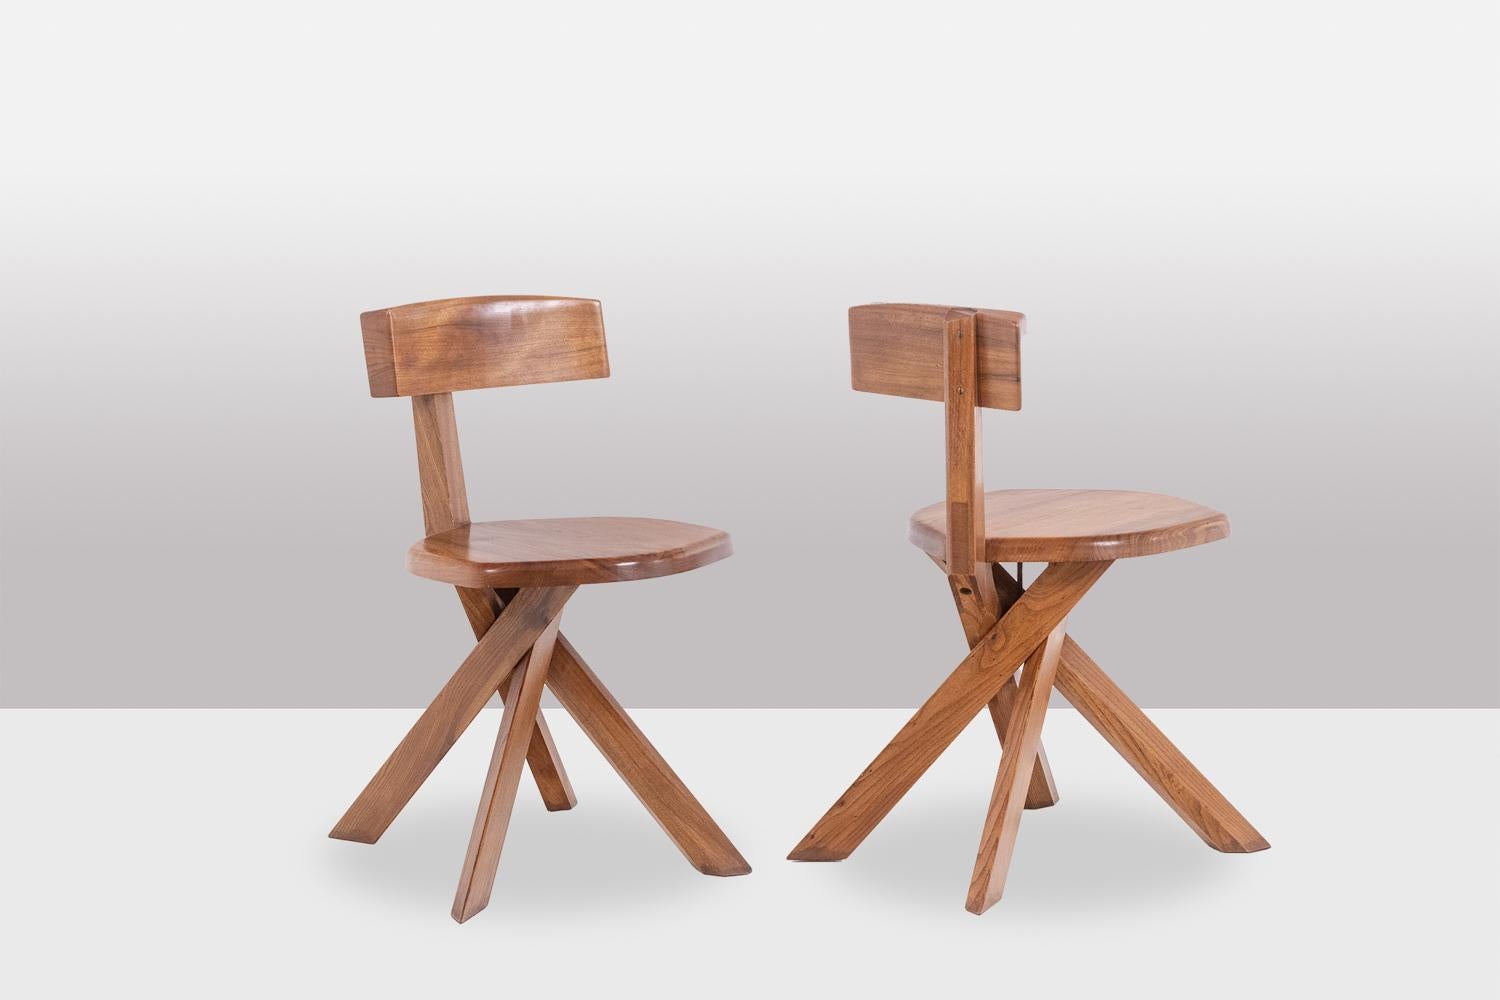 Pierre Chapo, par.

Série de 6 chaises modèle S34 en orme blond naturel massif.

Travail français réalisé dans les années 1960.

Dimensions : H 71 x L 40 x P 40 cm

Référence : LS58946601E

Pierre Chapo (1927-1987) est un créateur de meubles